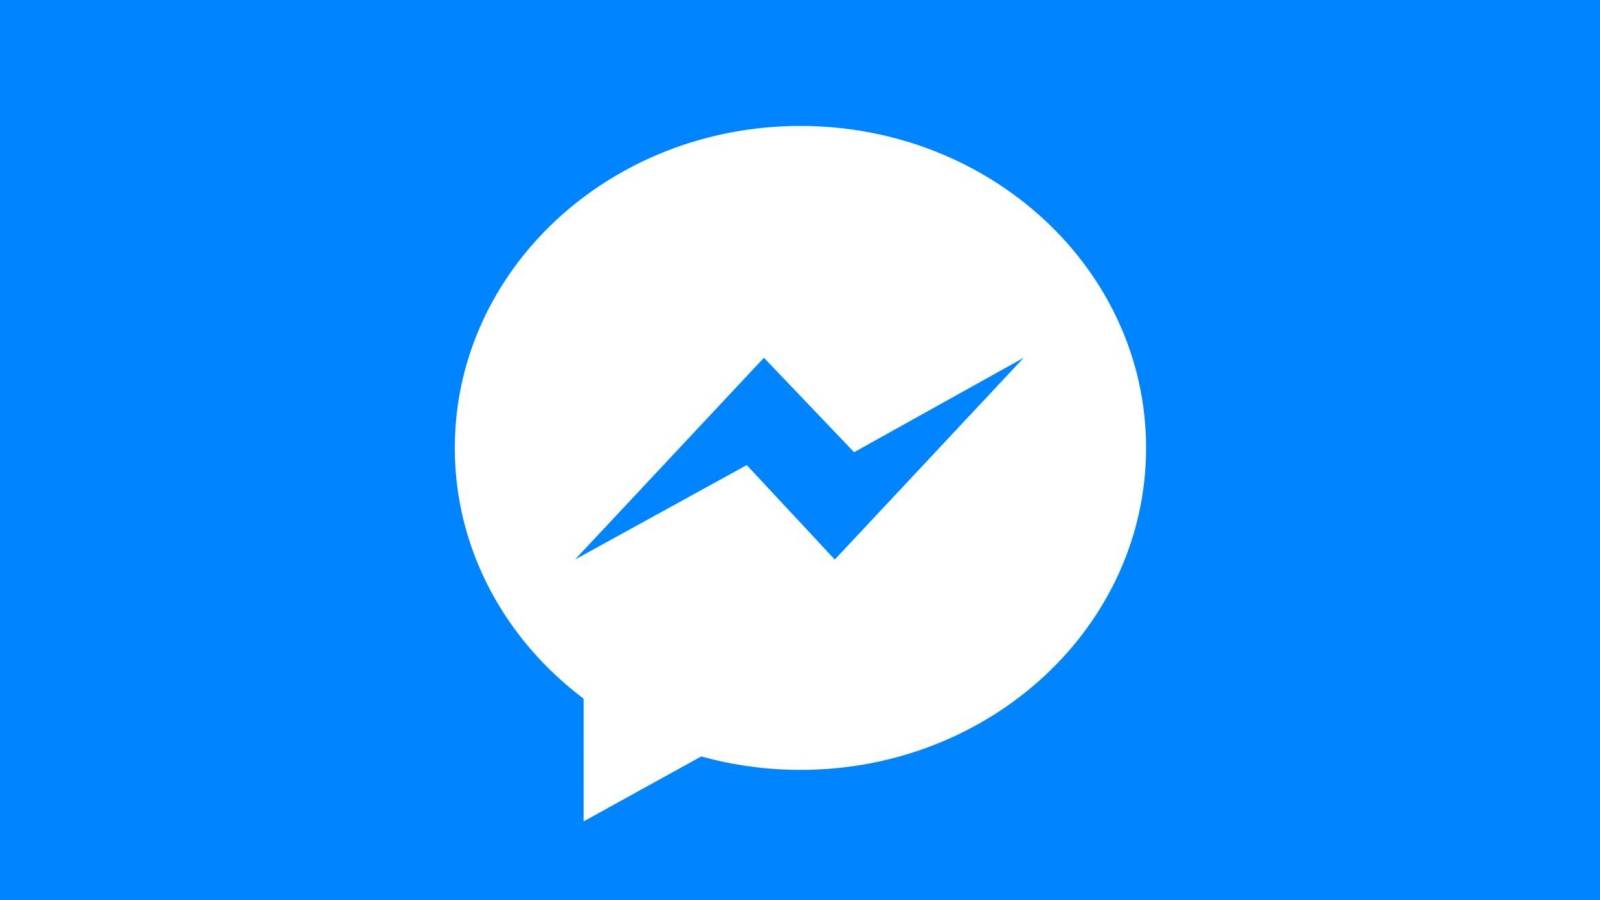 Facebook Messenger Nou Update Oferit Utilizatorilor de Telefoane si Tablete